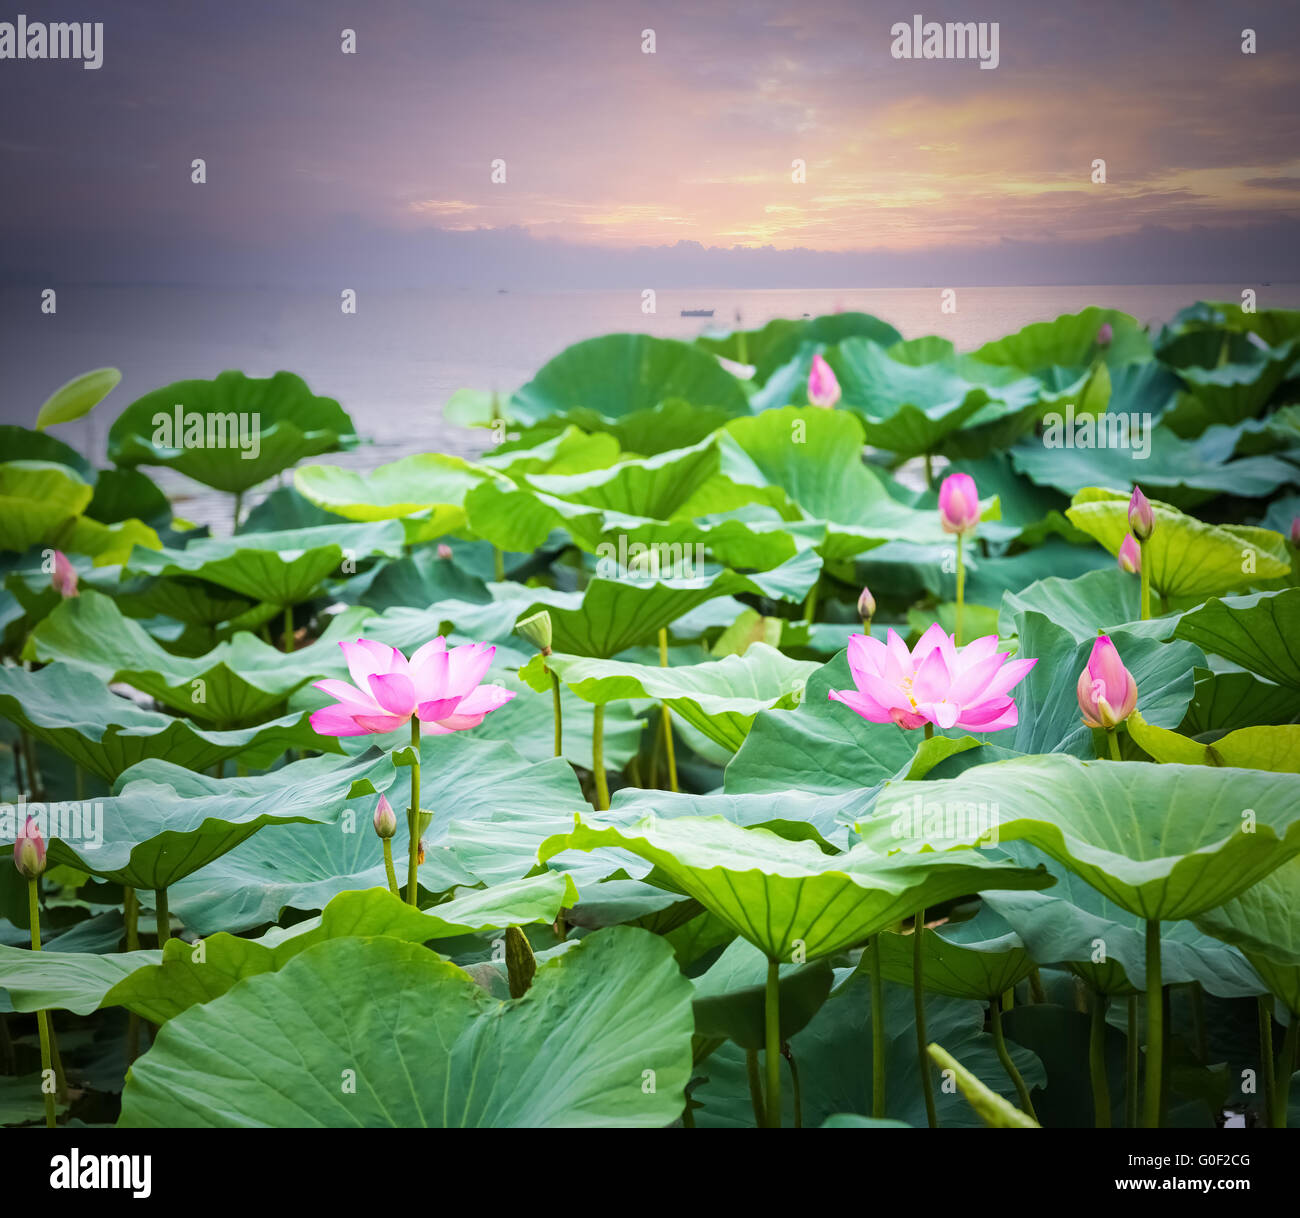 Fleur de lotus qui fleurit dans le coucher du soleil Banque D'Images